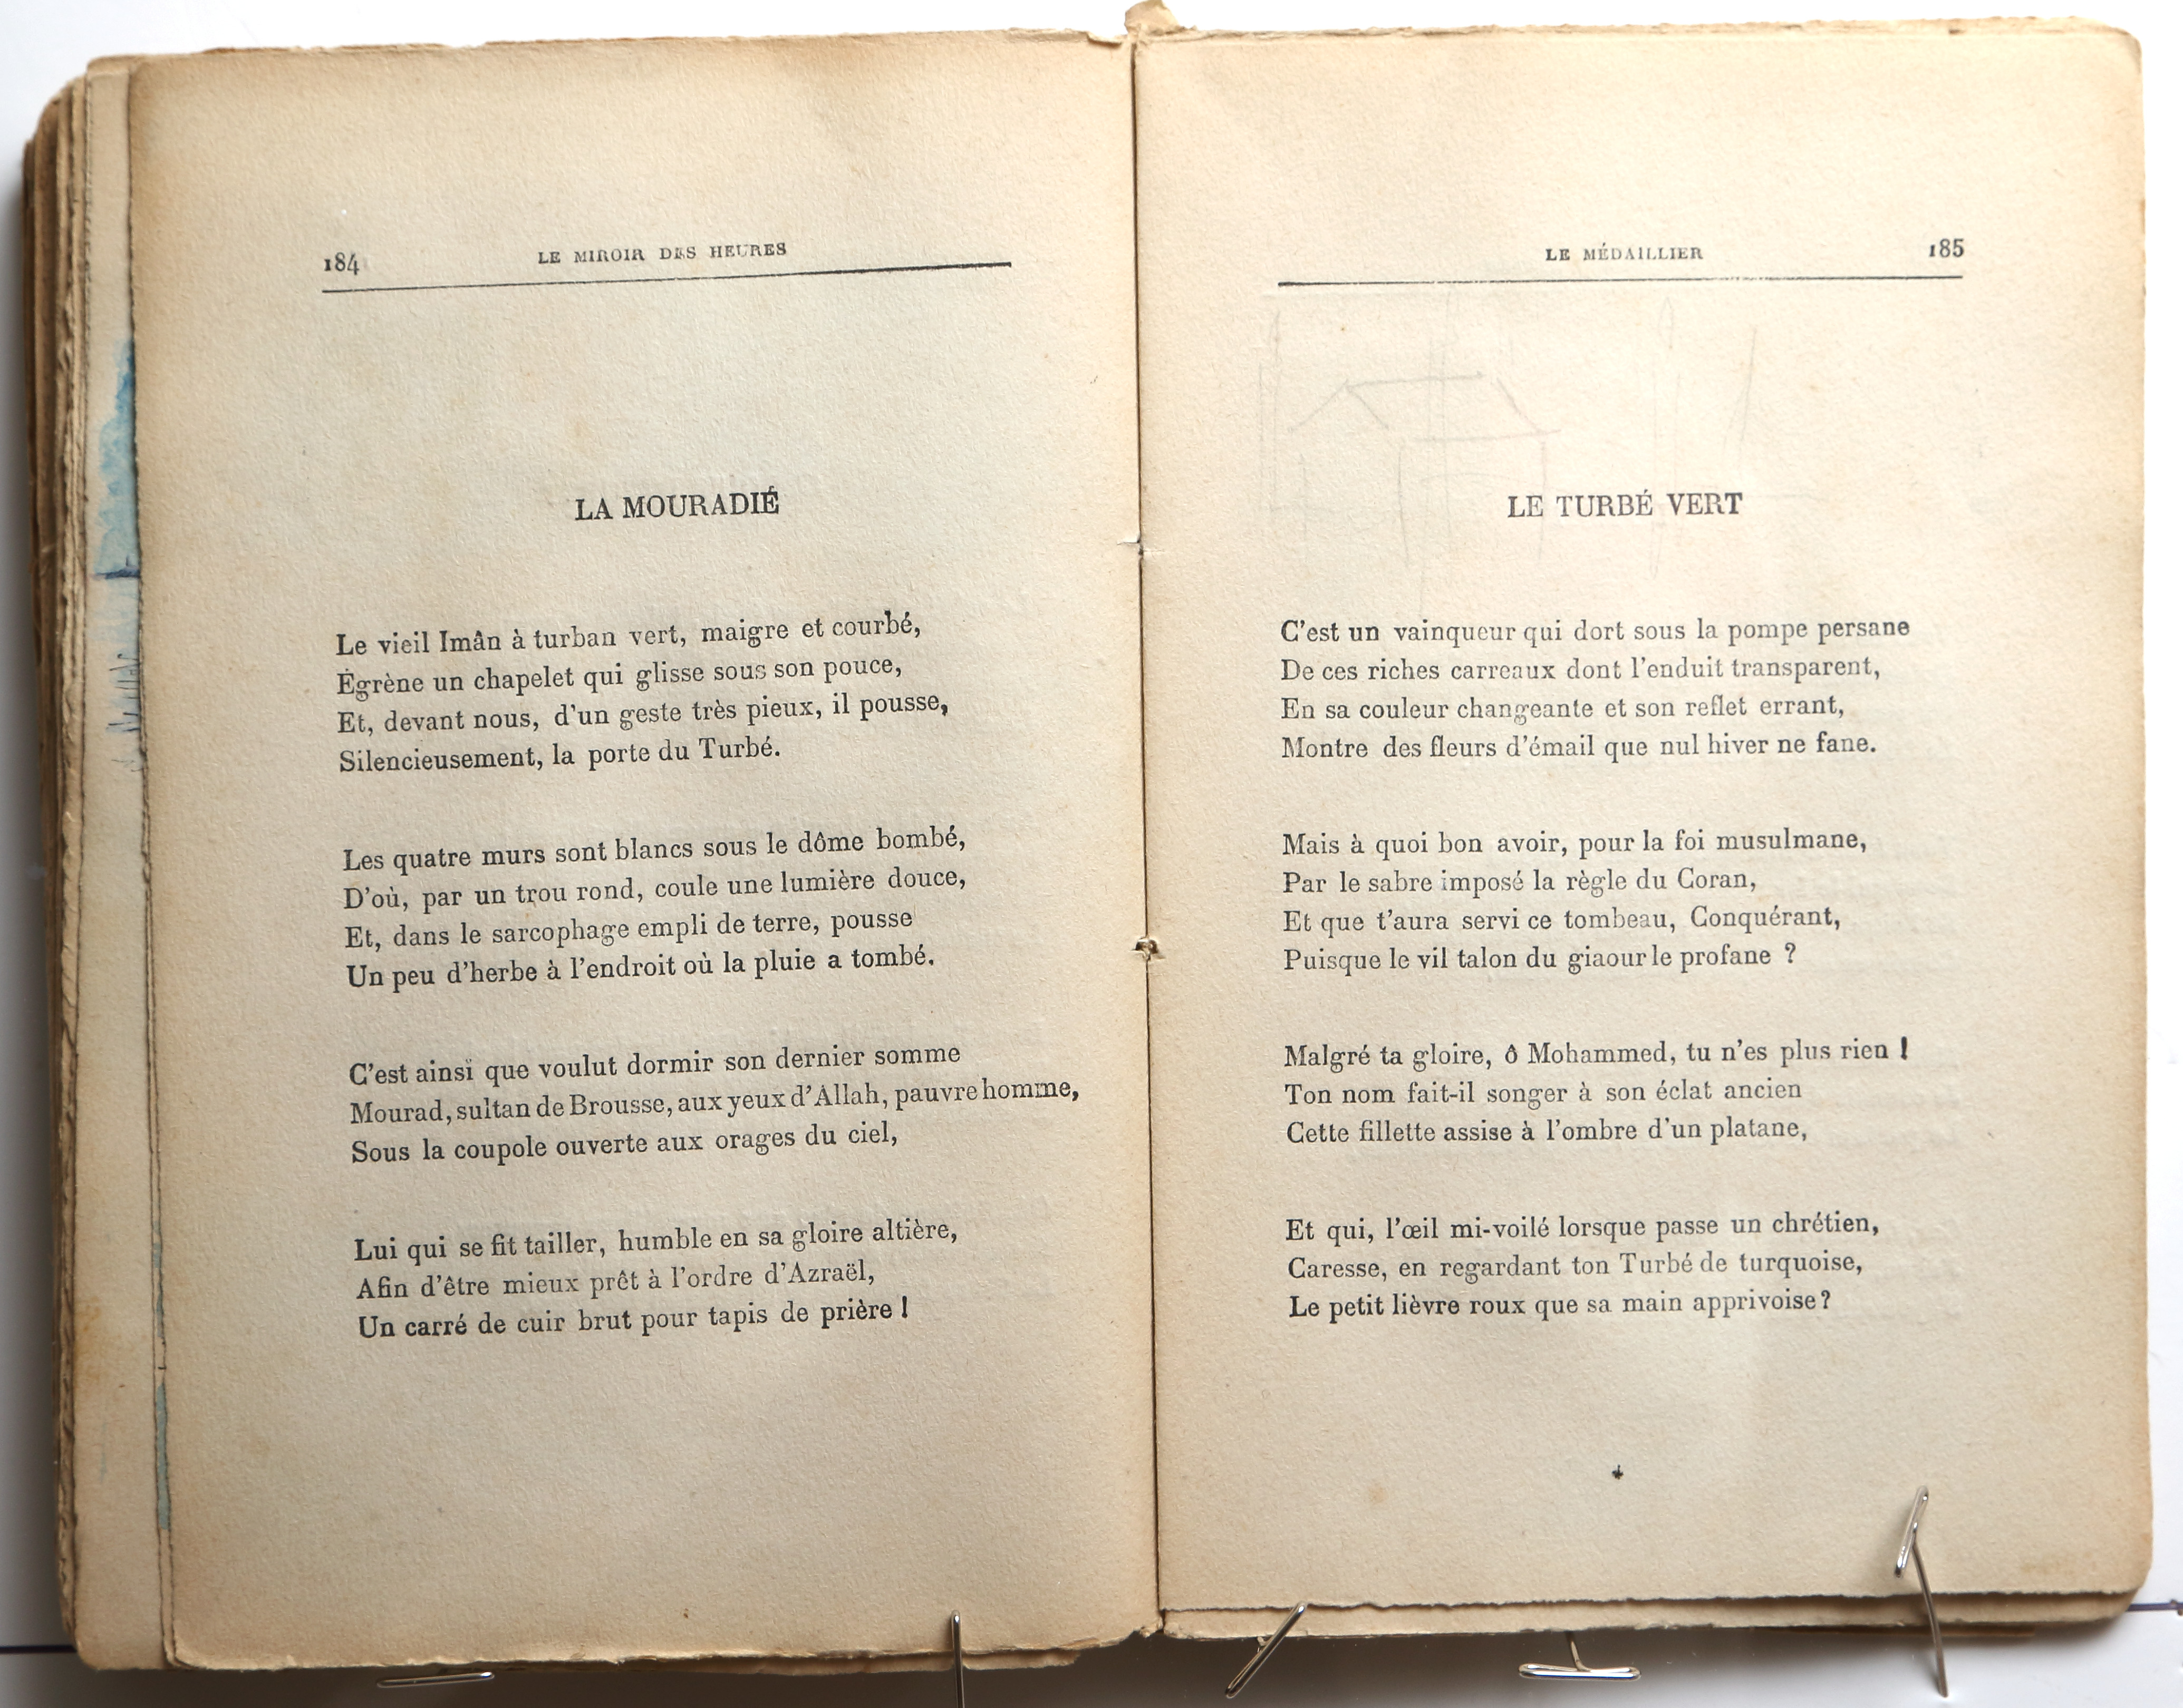 Pages 184–185.  Le Miroir des Heures, illustrations.  Jean Charlot.